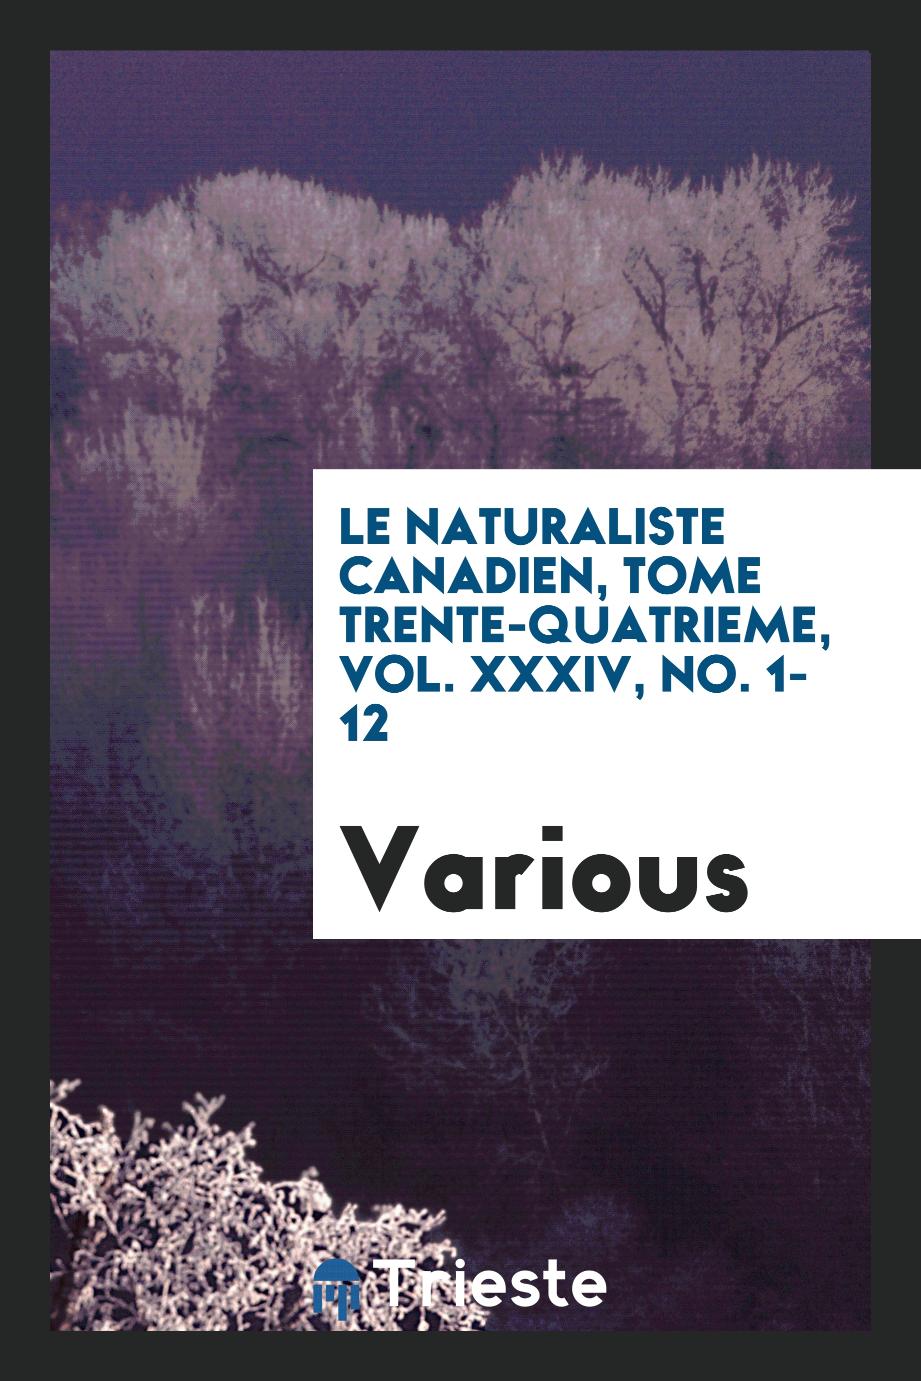 Le Naturaliste canadien, Tome trente-quatrieme, Vol. XXXIV, No. 1-12